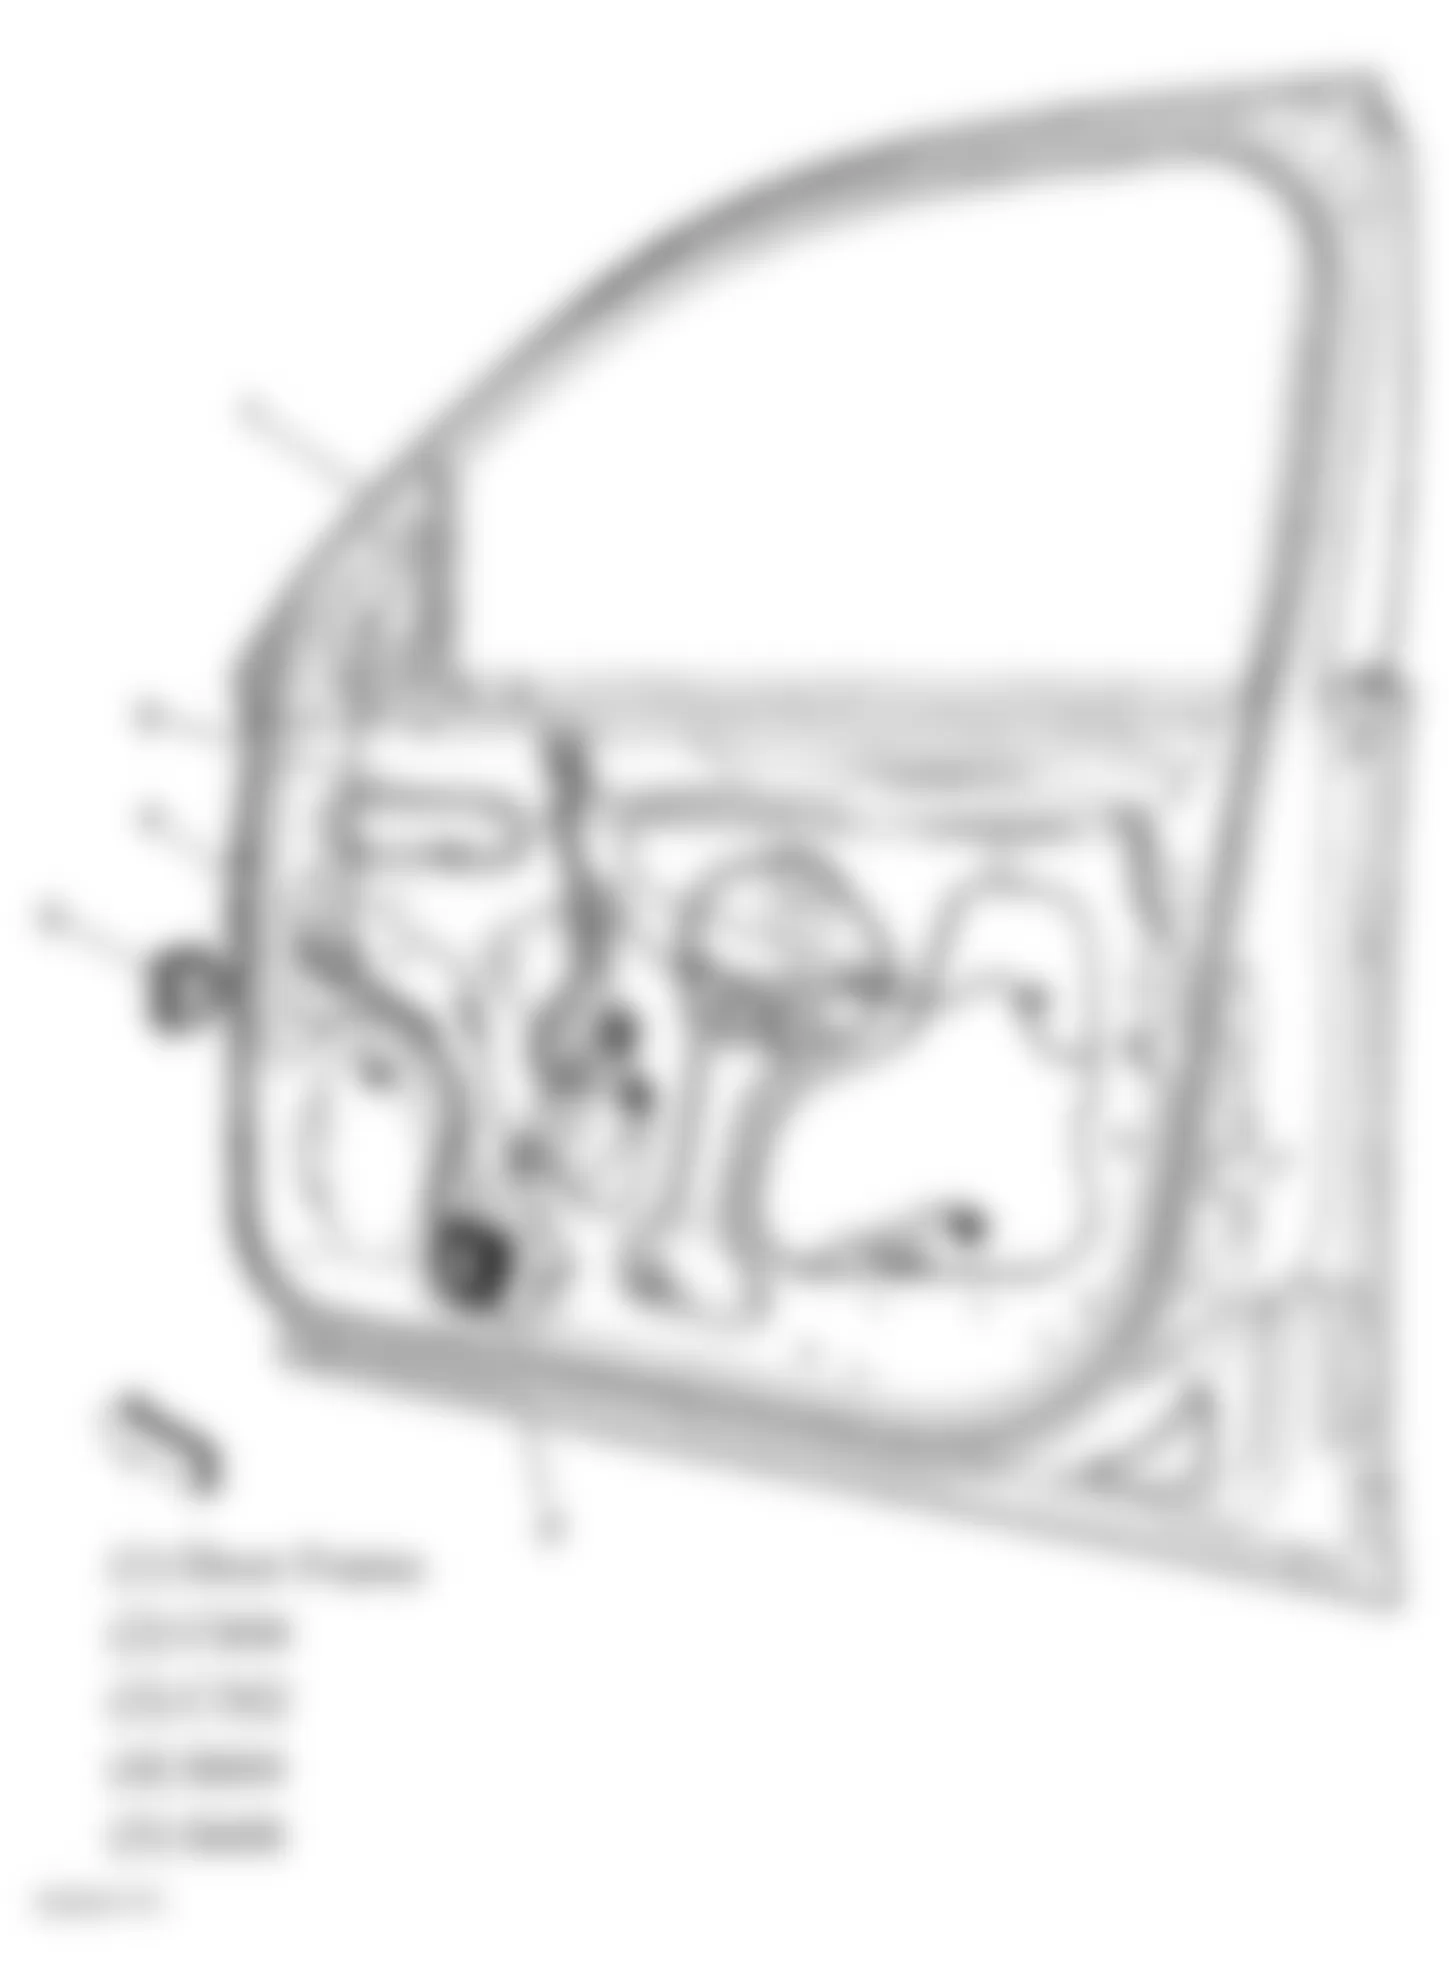 Chevrolet Monte Carlo LTZ 2006 - Component Locations -  Front Passenger Door Harness (Sedan)